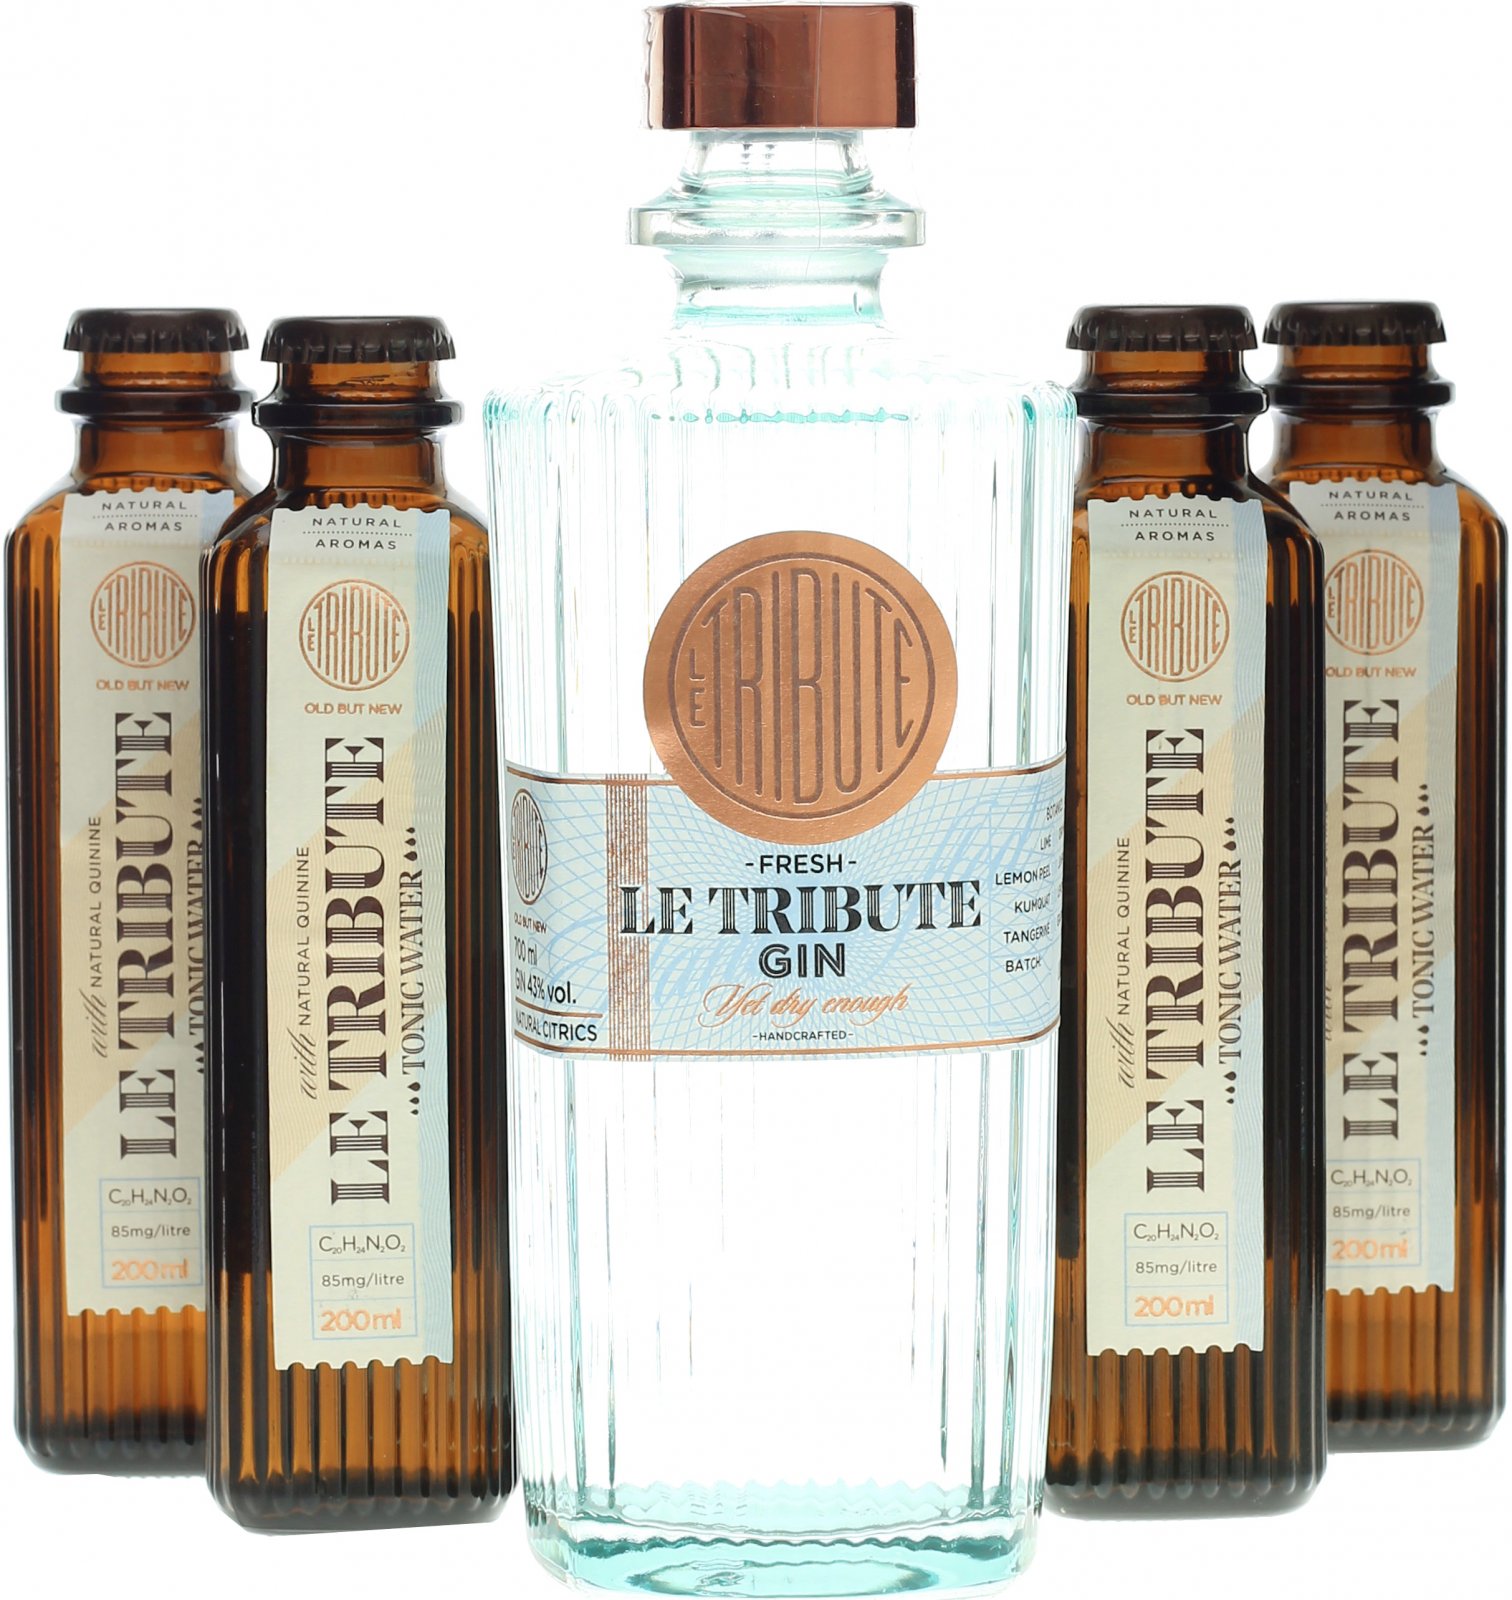 https://www.spirituosen-superbillig.com/pic/Le-Tribute-Gin-0-7-Liter-4-x-Le-Tribute-Tonic.14806a.jpg